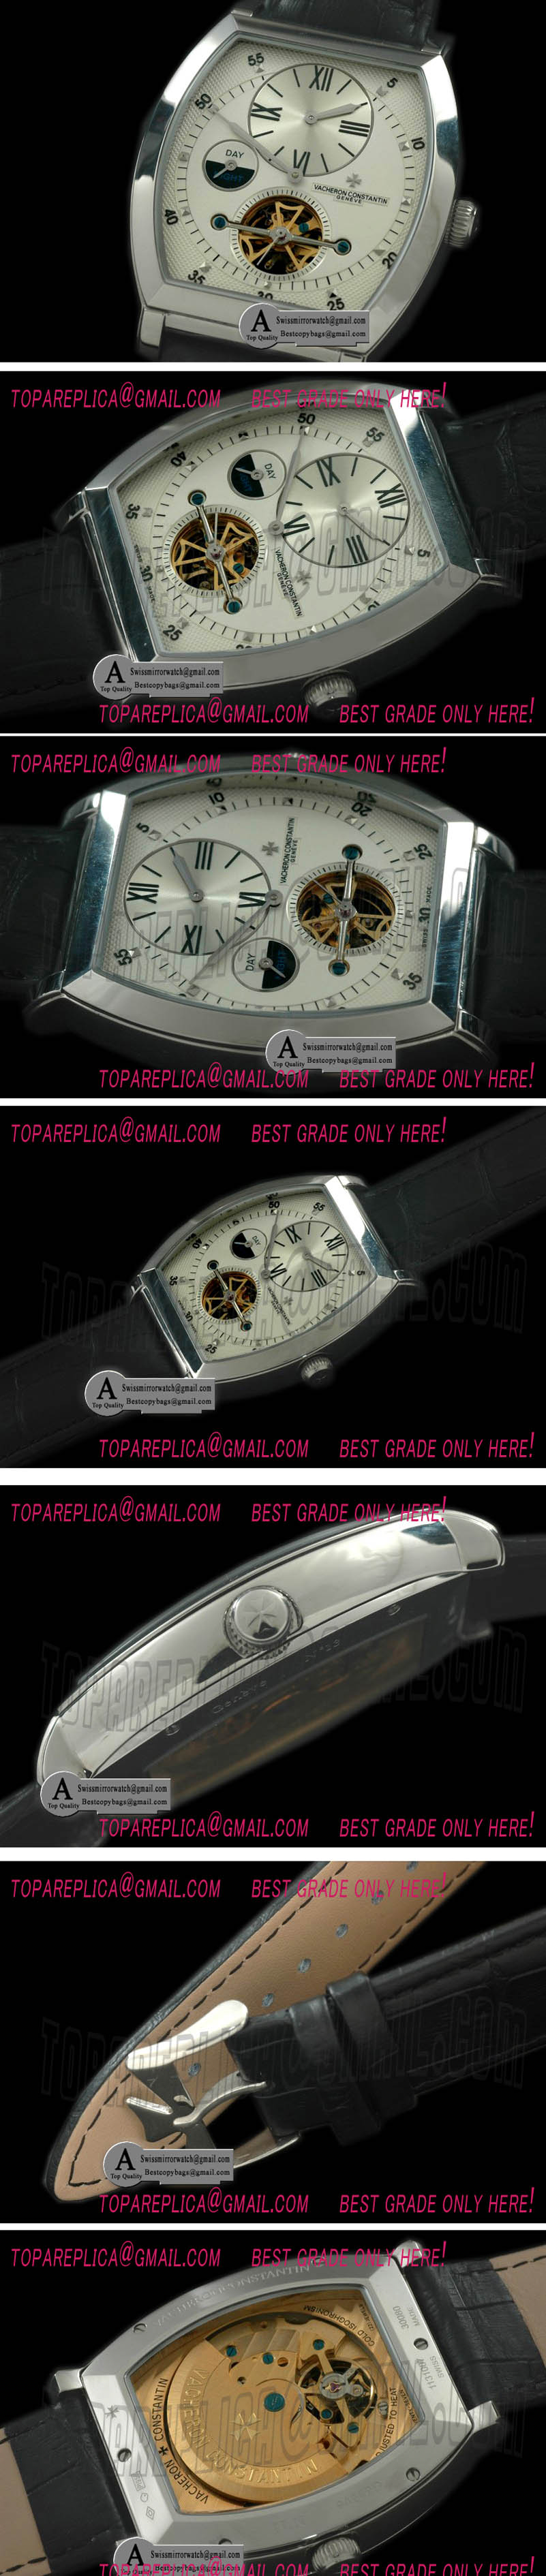 Vacheron Constantin Malte Regulator Tourbillon SS/Leather White Dial Asian 2813 Replica Watches